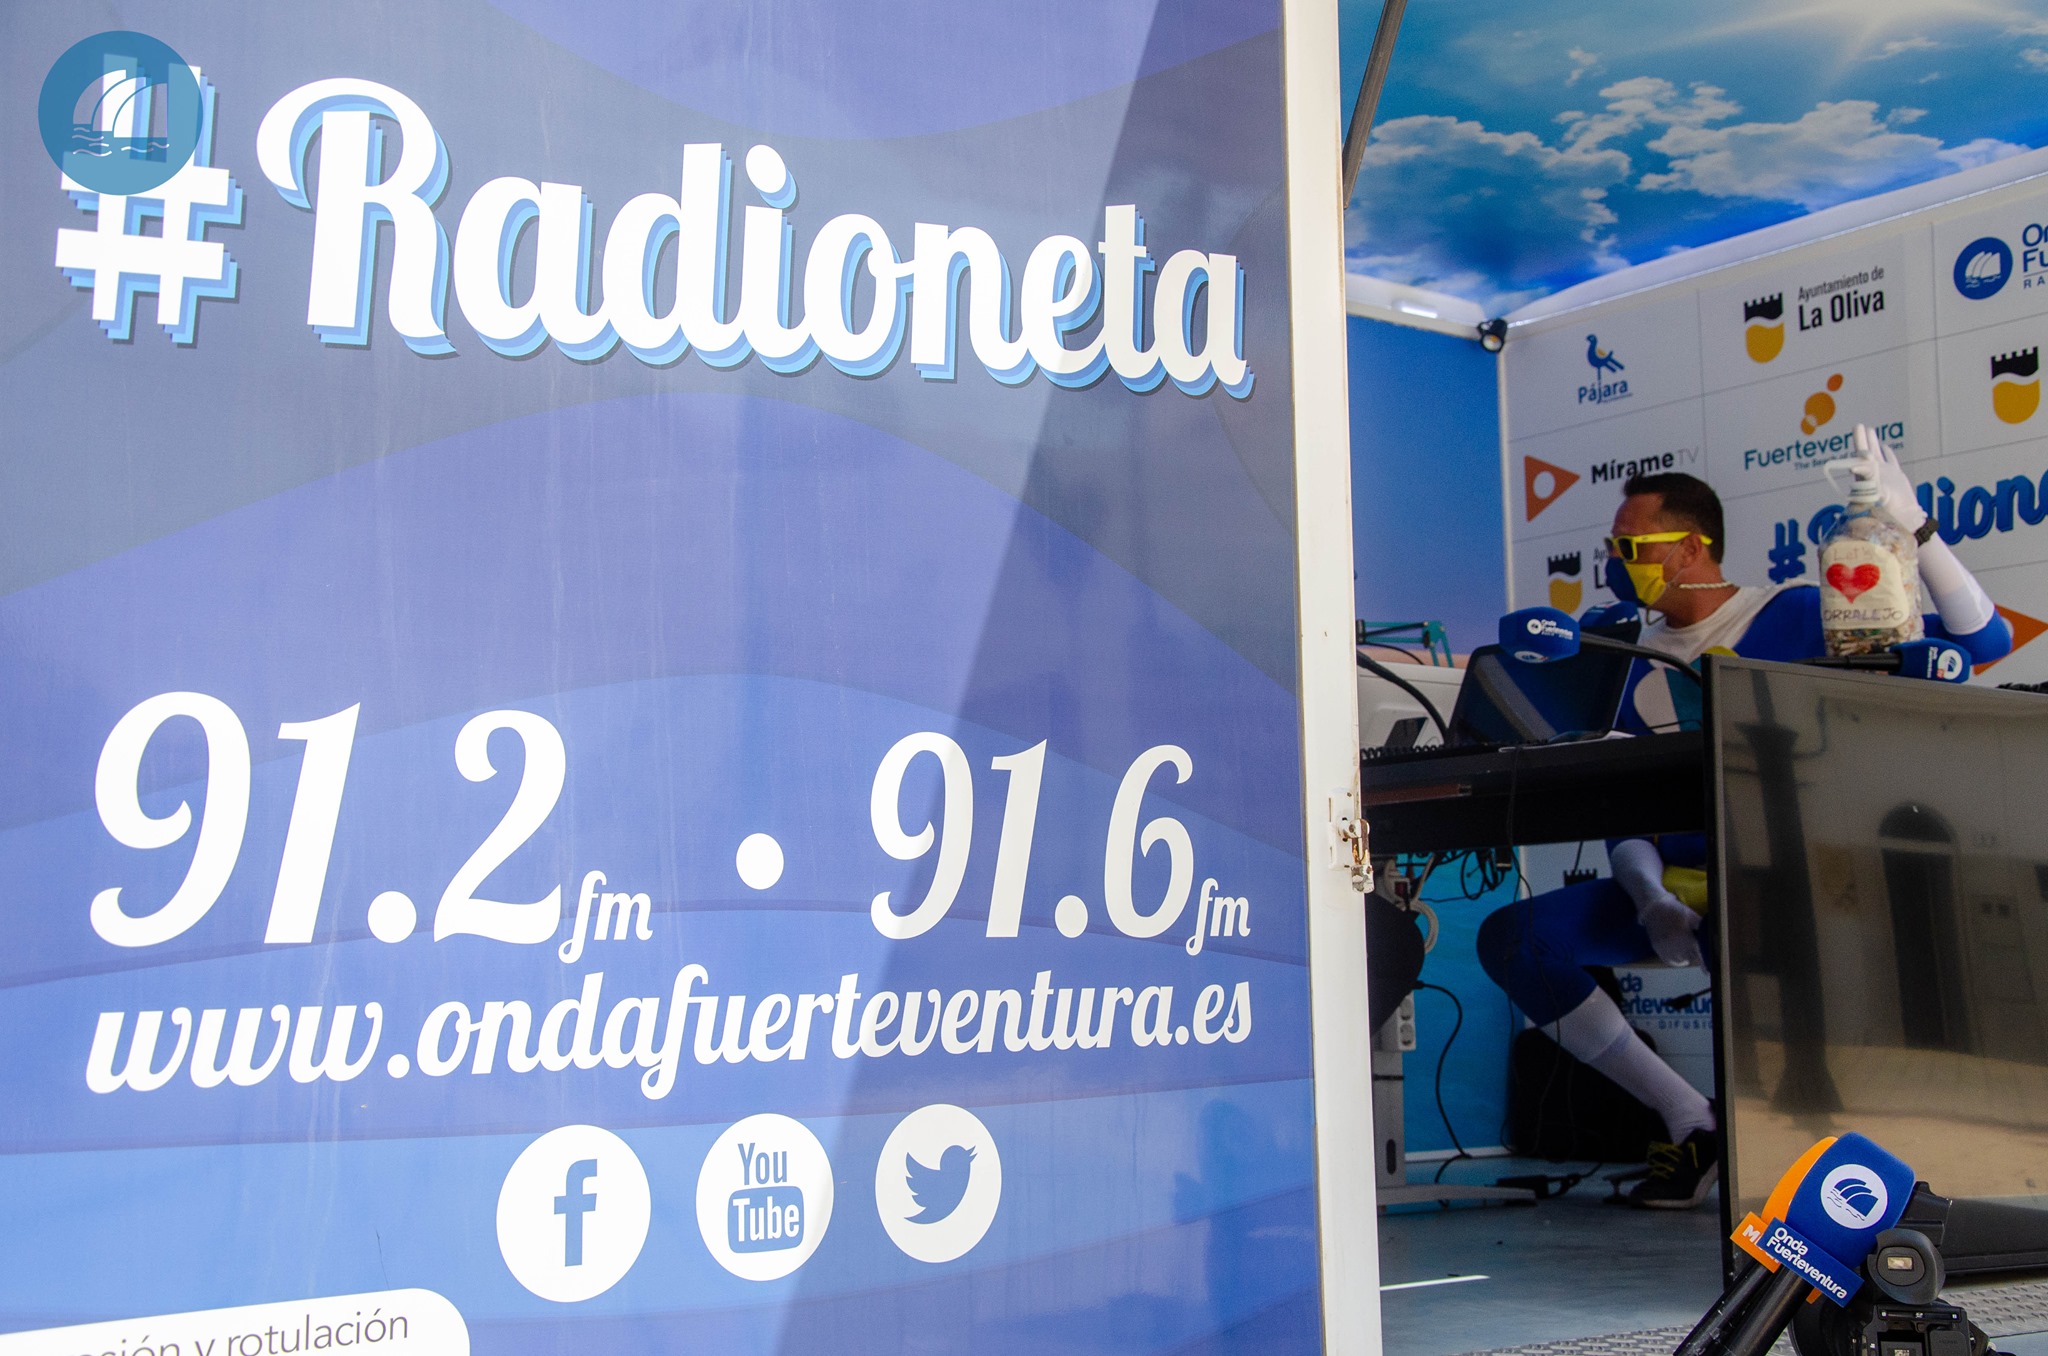 220631304_4545716642113231_9038118874951942051_n 'La Radioneta' conmemorará el Día Mundial de la Juventud con programación en directo